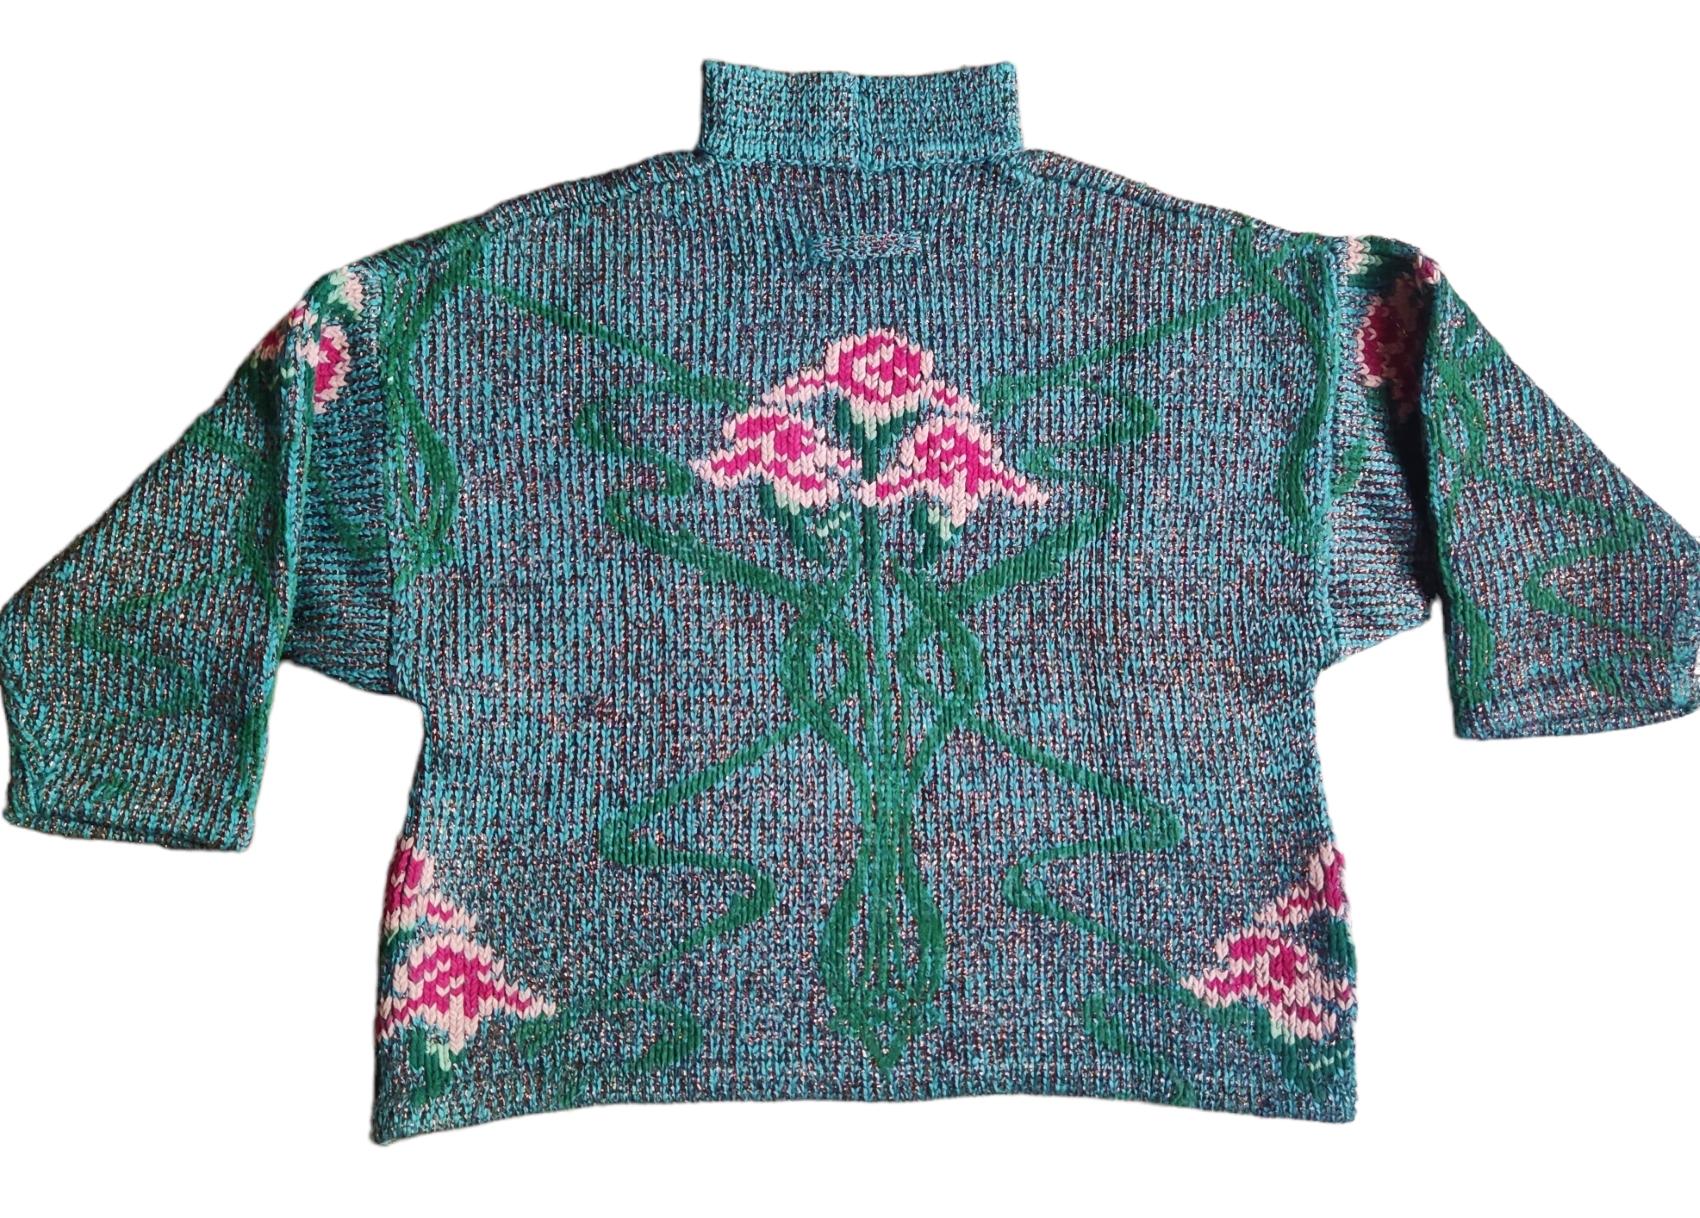 Lurex-Pullover von Jean Paul Gaultier aus der Herbst-Winter-Kollektion 1984!
Dieser Pullover besteht aus rosafarbenen Blumen, die mit Chenille-Garn gestrickt wurden, und kupferfarbenem Lurex, der ihm einen subtilen Glanz verleiht und der